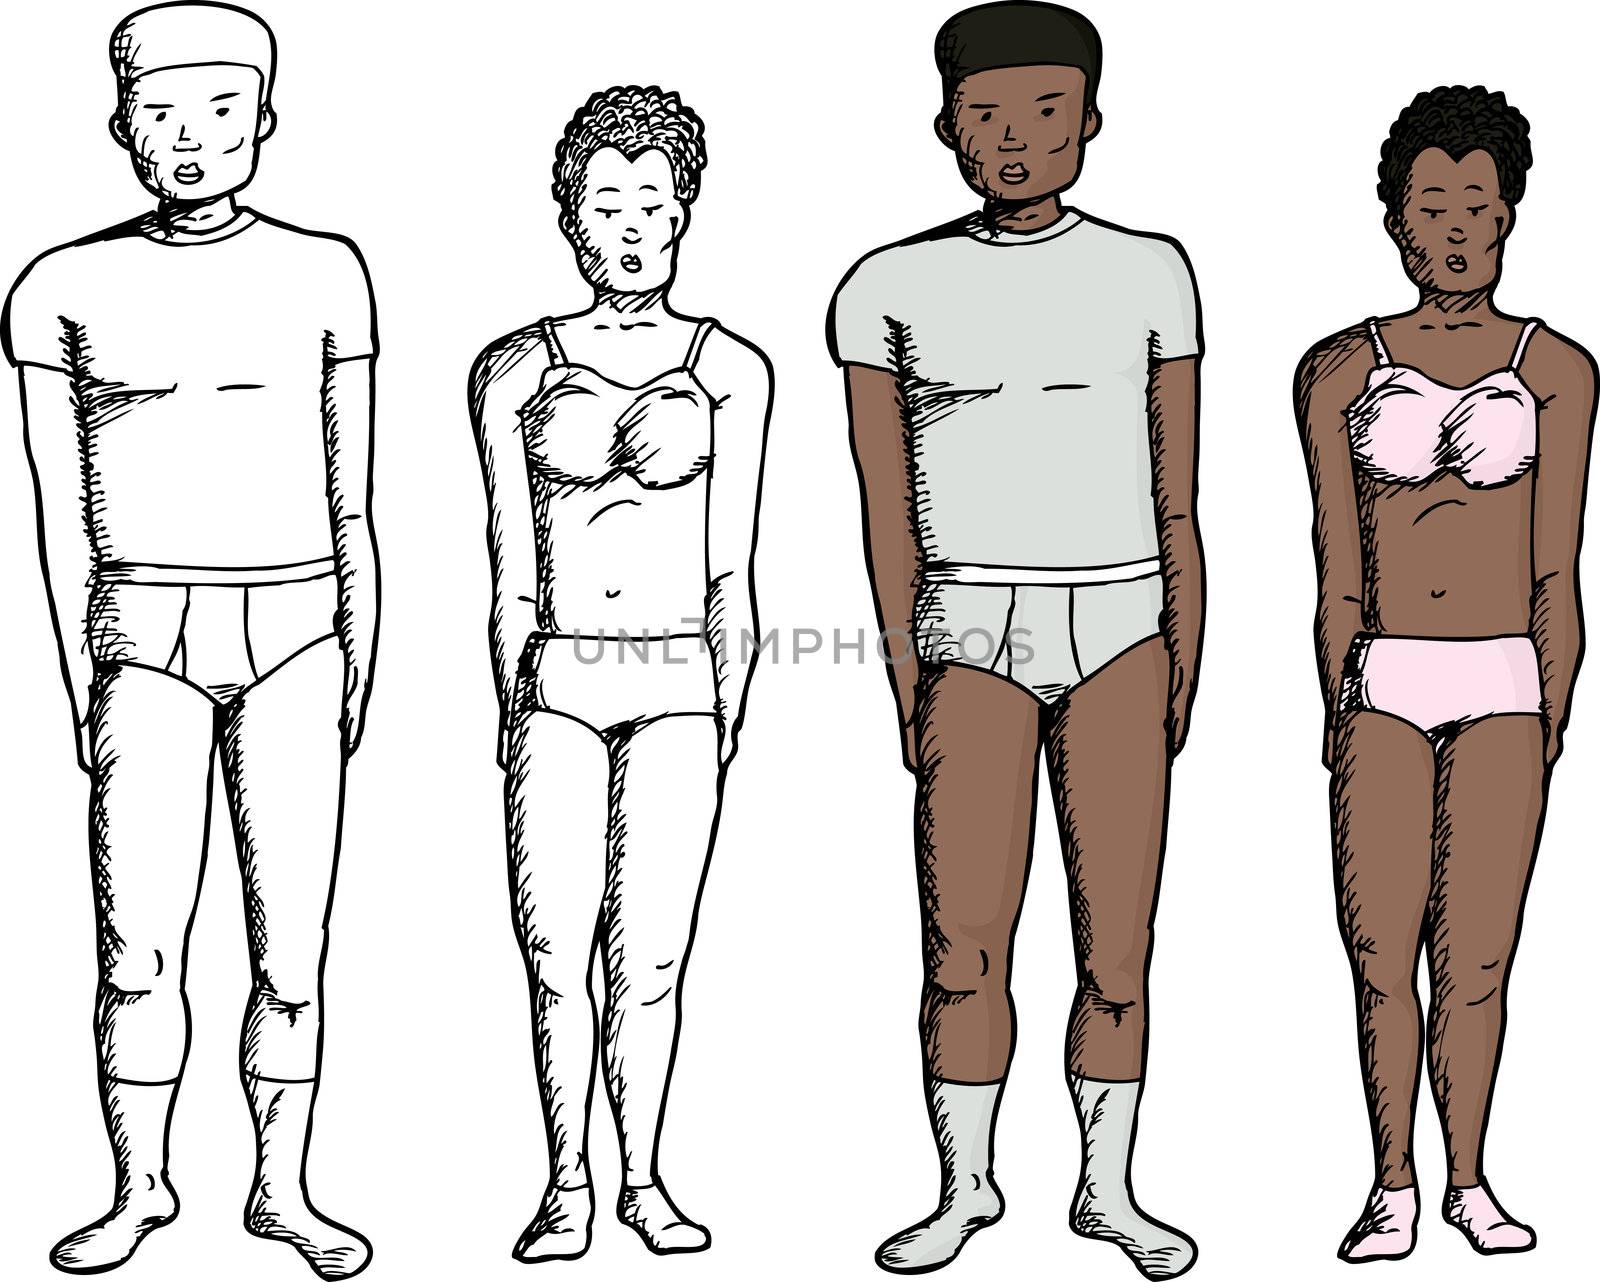 People in Underwear by TheBlackRhino